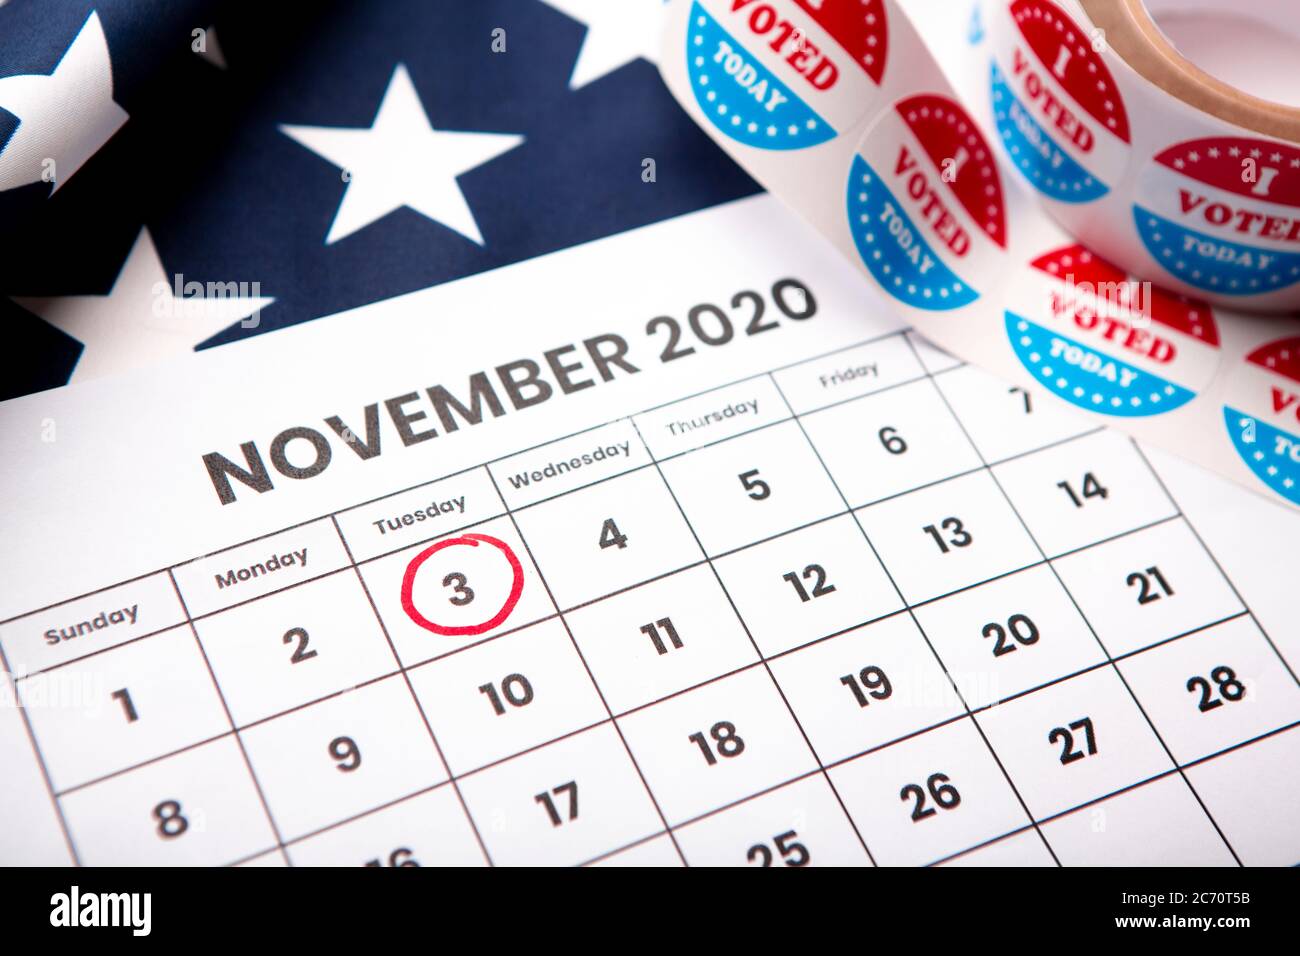 Cercle rouge sur le calendrier de novembre 2020, élection présidentielle Banque D'Images